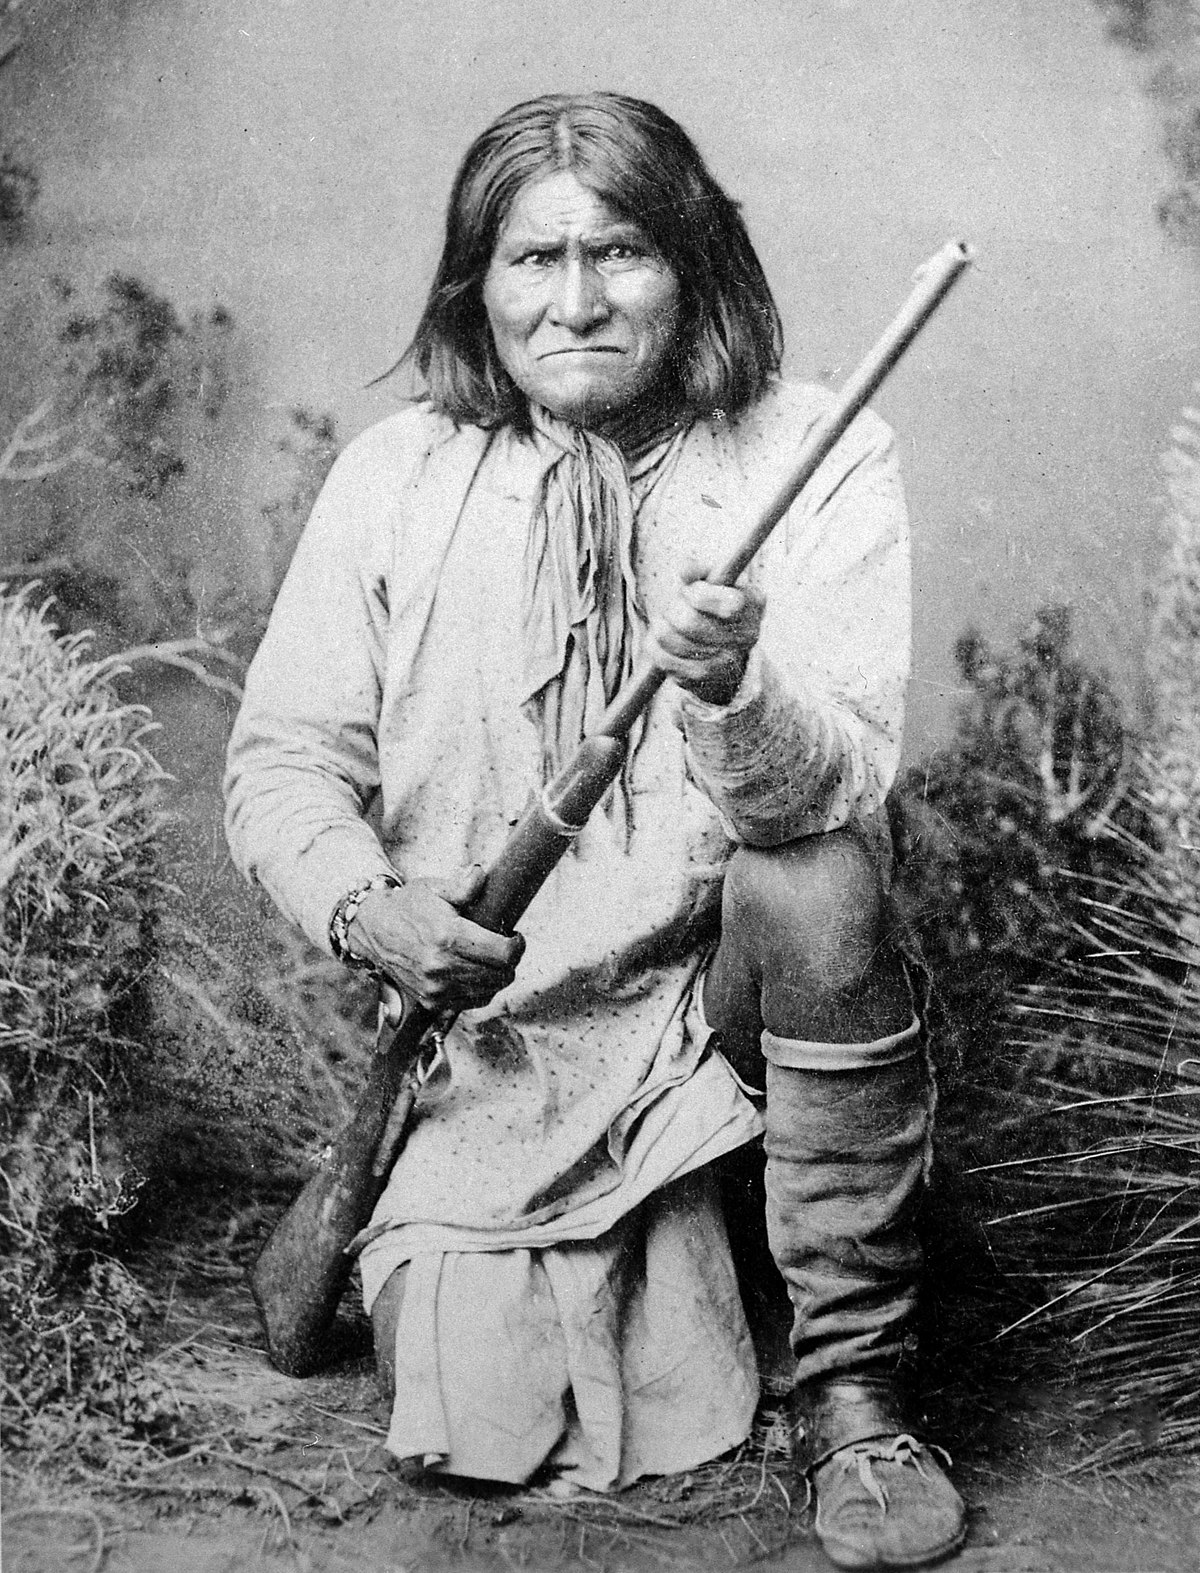  Wasifu na historia ya Geronimo